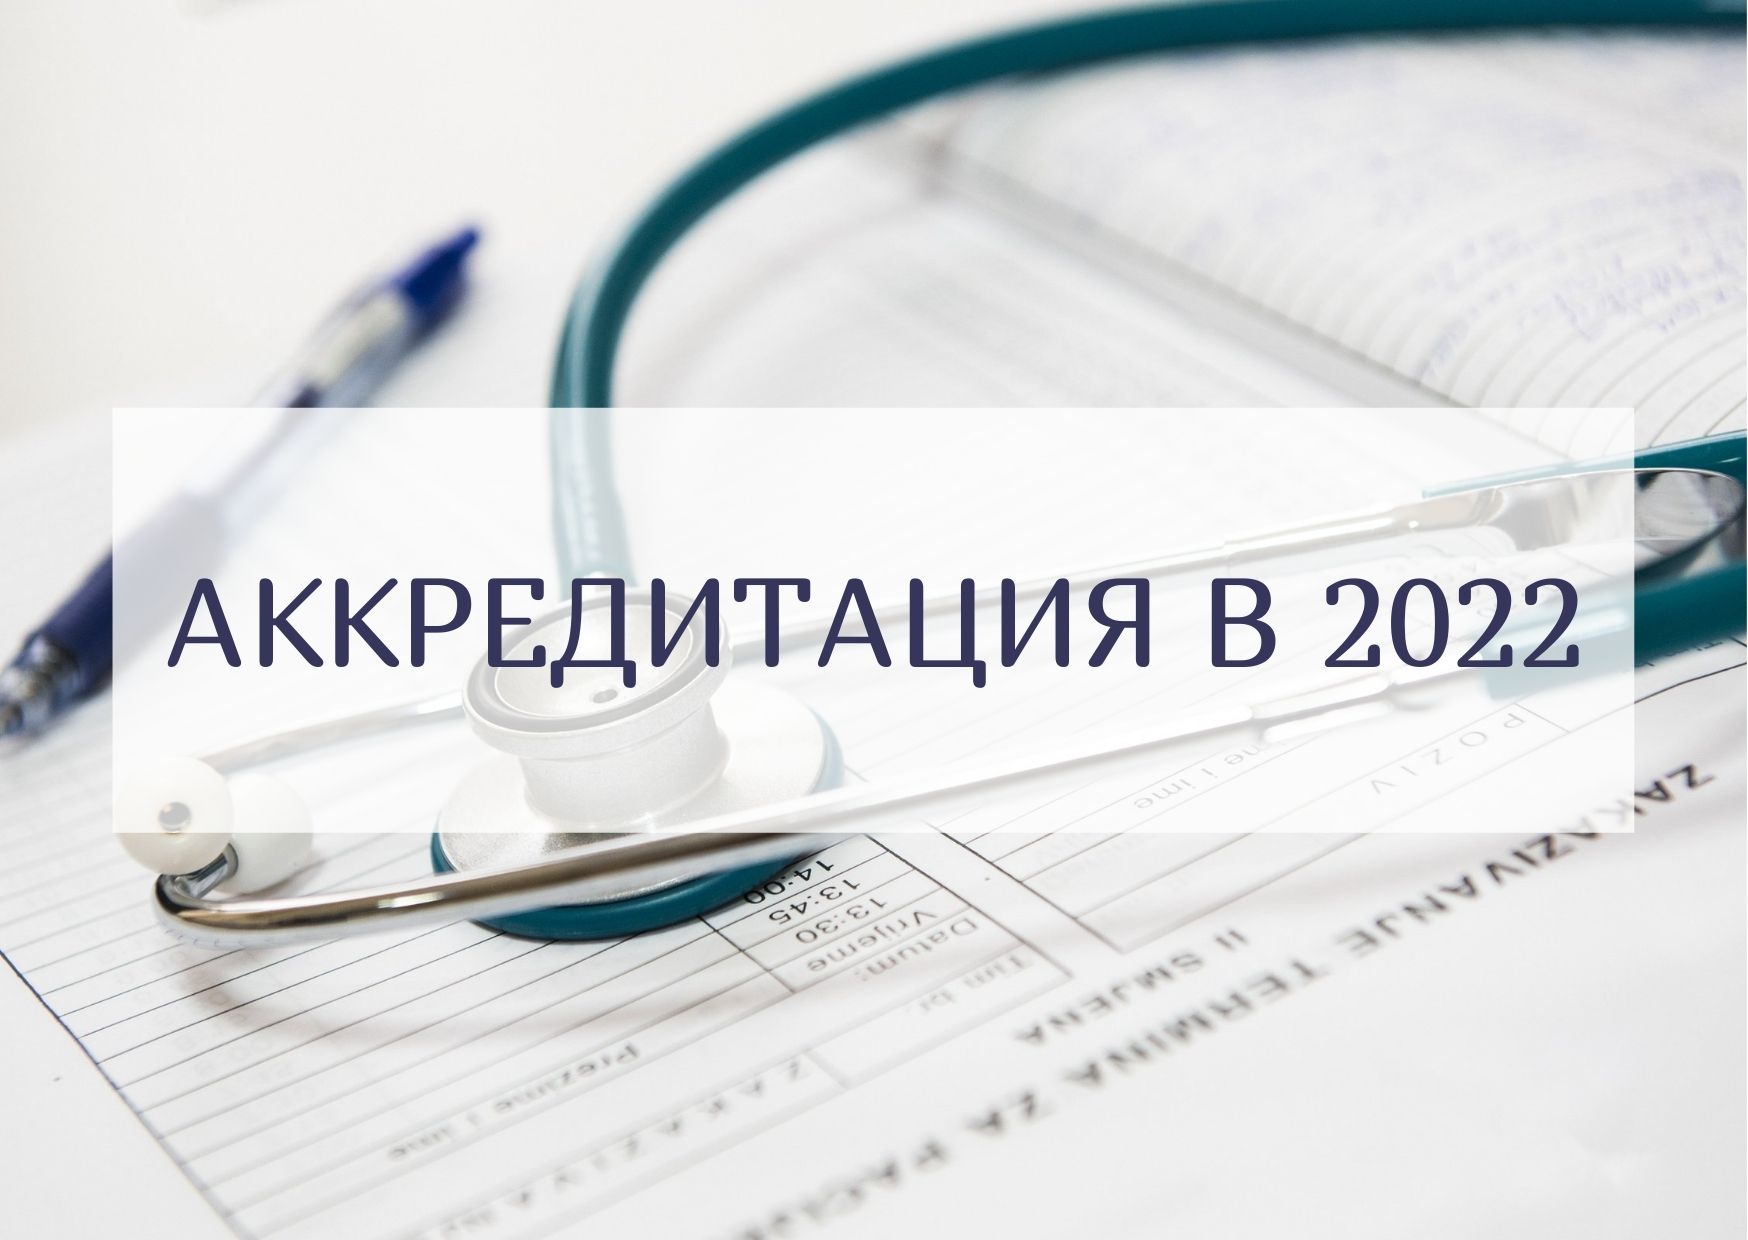 Рф аккредитация медицинских. Аккредитация медицинских работников. Аккредитация медицинских работников в 2022. Аккредитация медсестер 2022. Аккредитация среднего медицинского персонала в 2021 году.